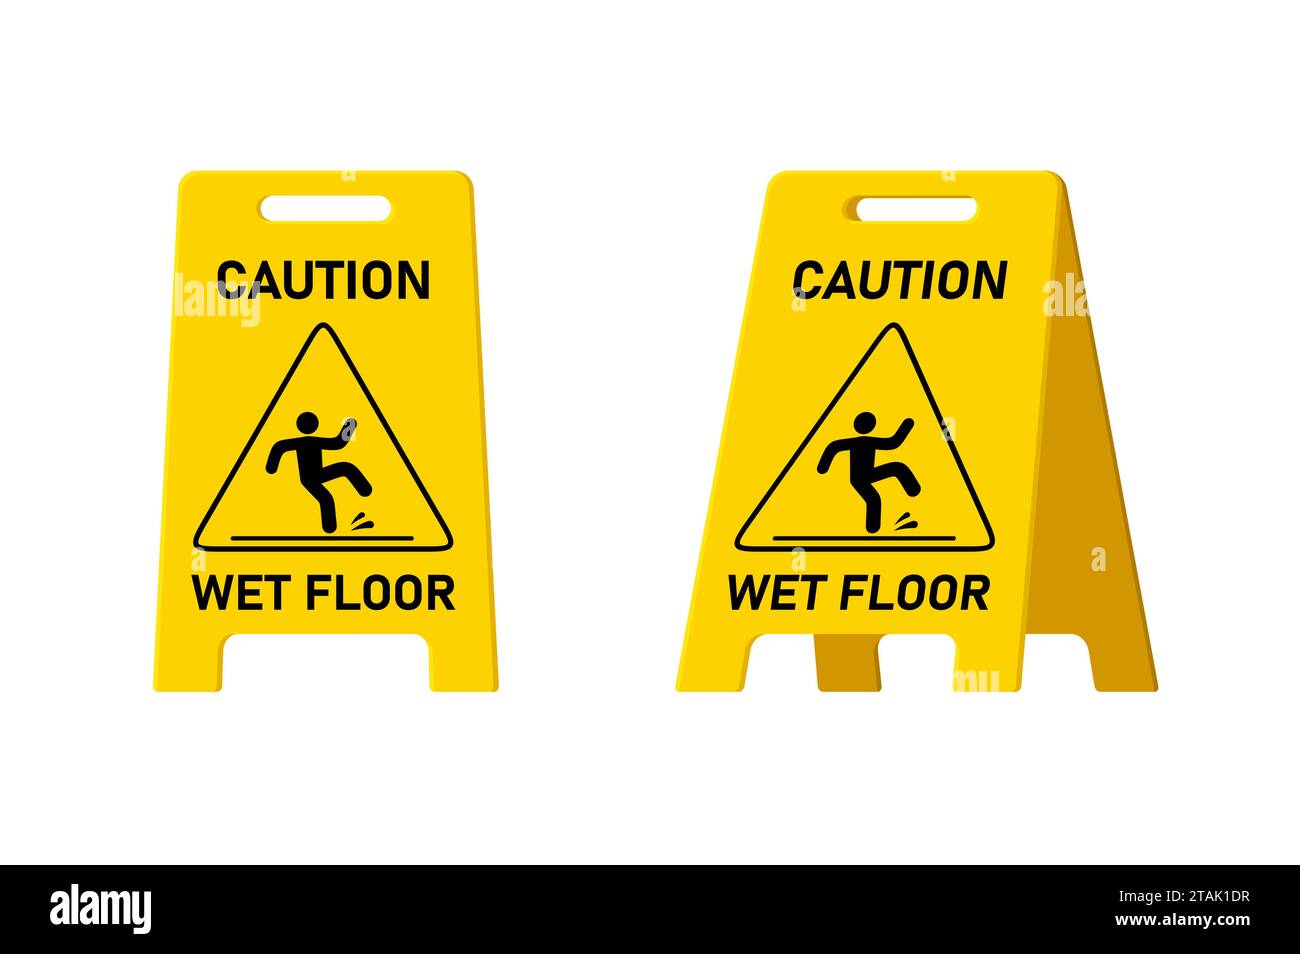 Warnschild für nassen Boden isoliert auf weißem Hintergrund, gelbes Symbol Clipart für öffentliche Warnung. Rutschige Oberfläche Vorsicht beim Design von Kunststoffplatten. Stock Vektor